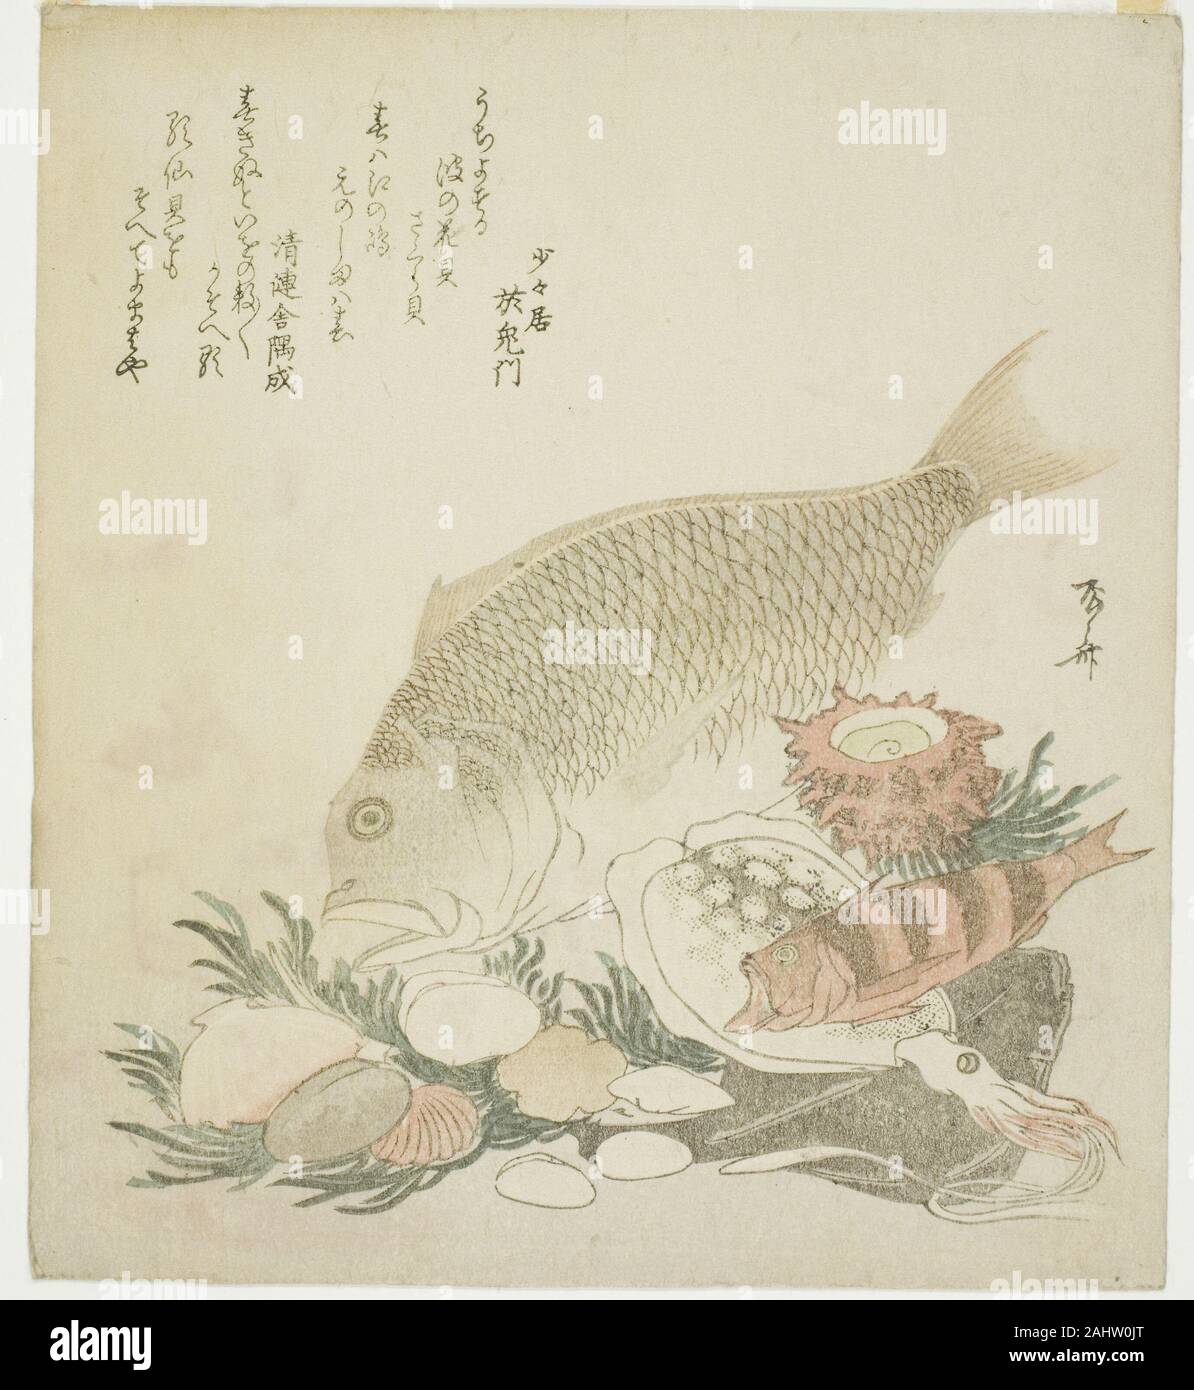 Ryuryukyo Shinsai. Pesci e conchiglie. 1821. Il Giappone. Colore stampa woodblock; shikishiban, surimono Foto Stock